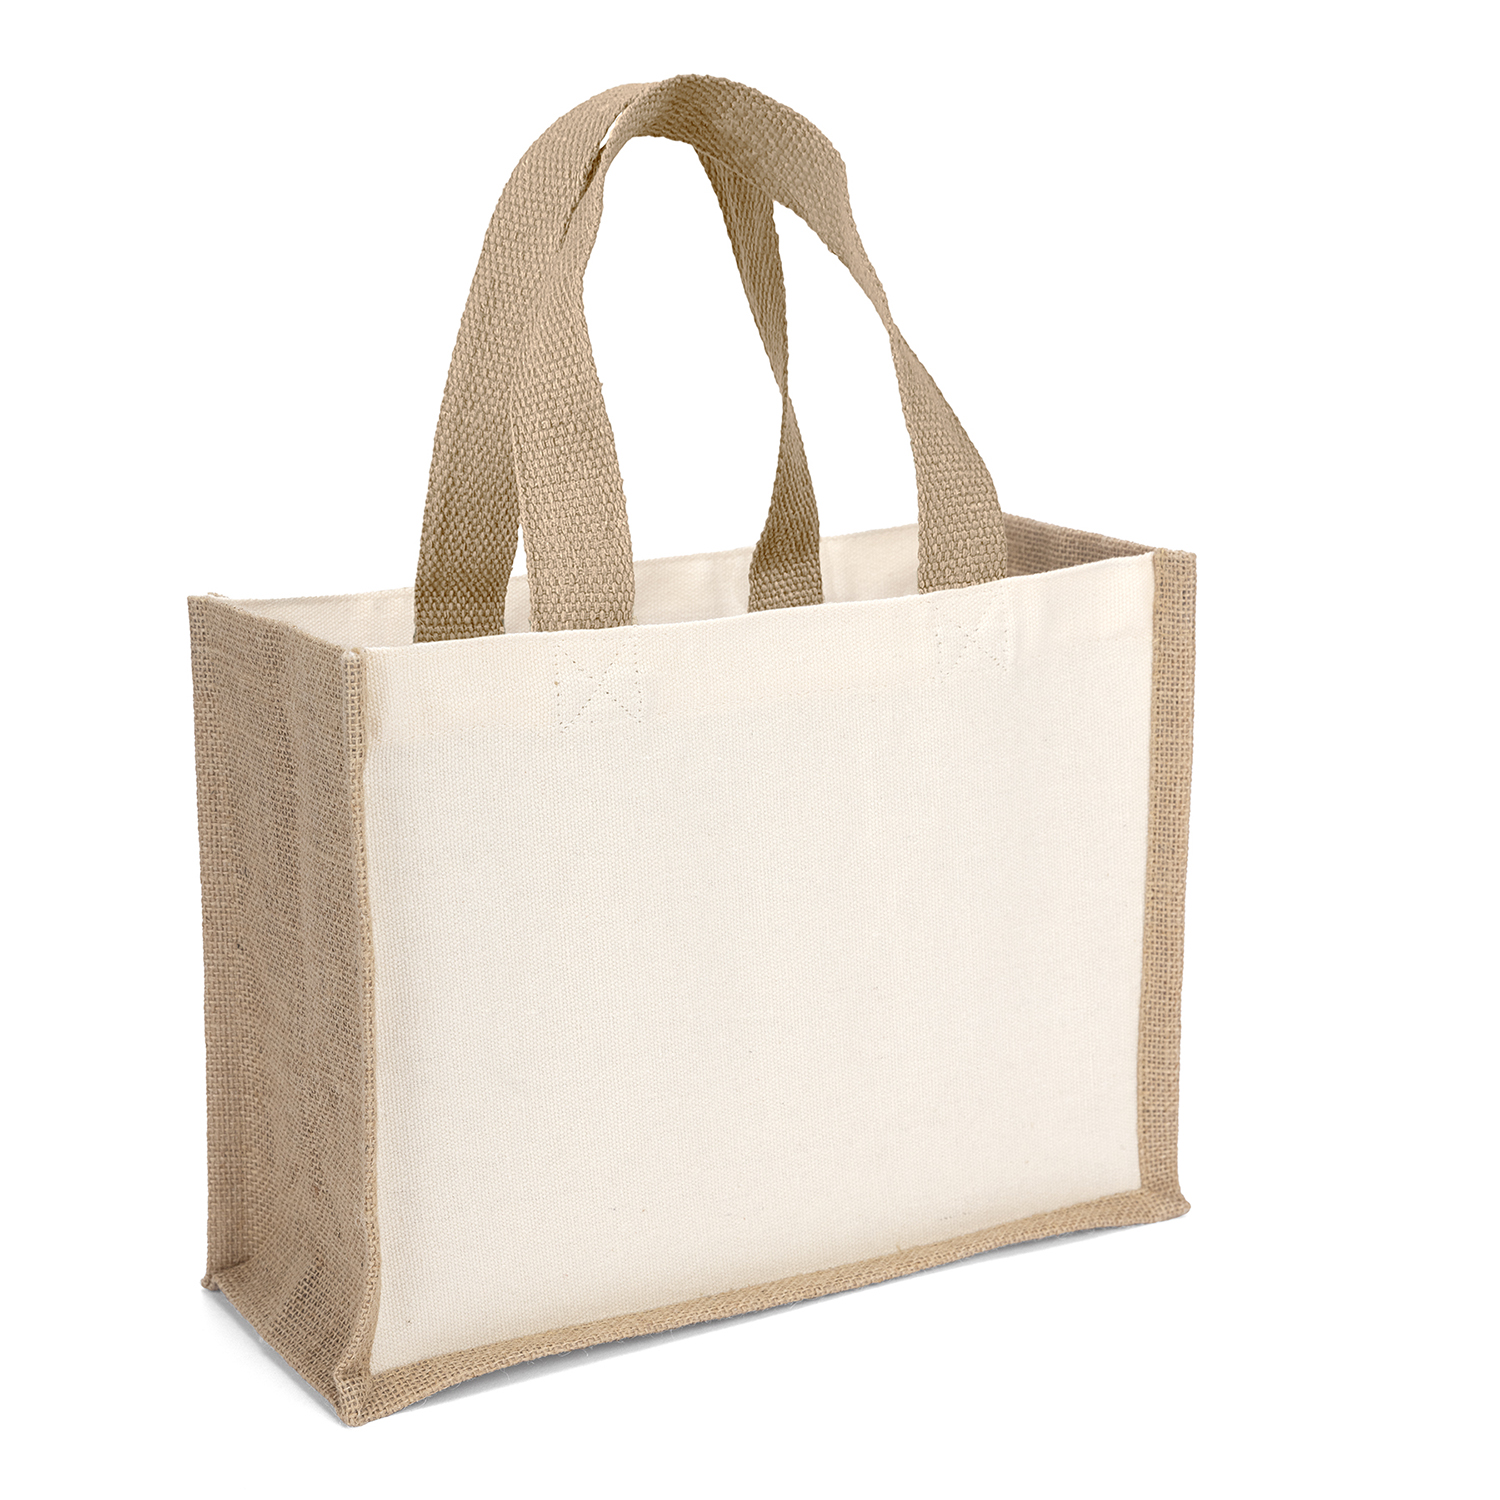 Bag Makers 40RE129 - Custom Printed Laminated Promotional Tote Bag